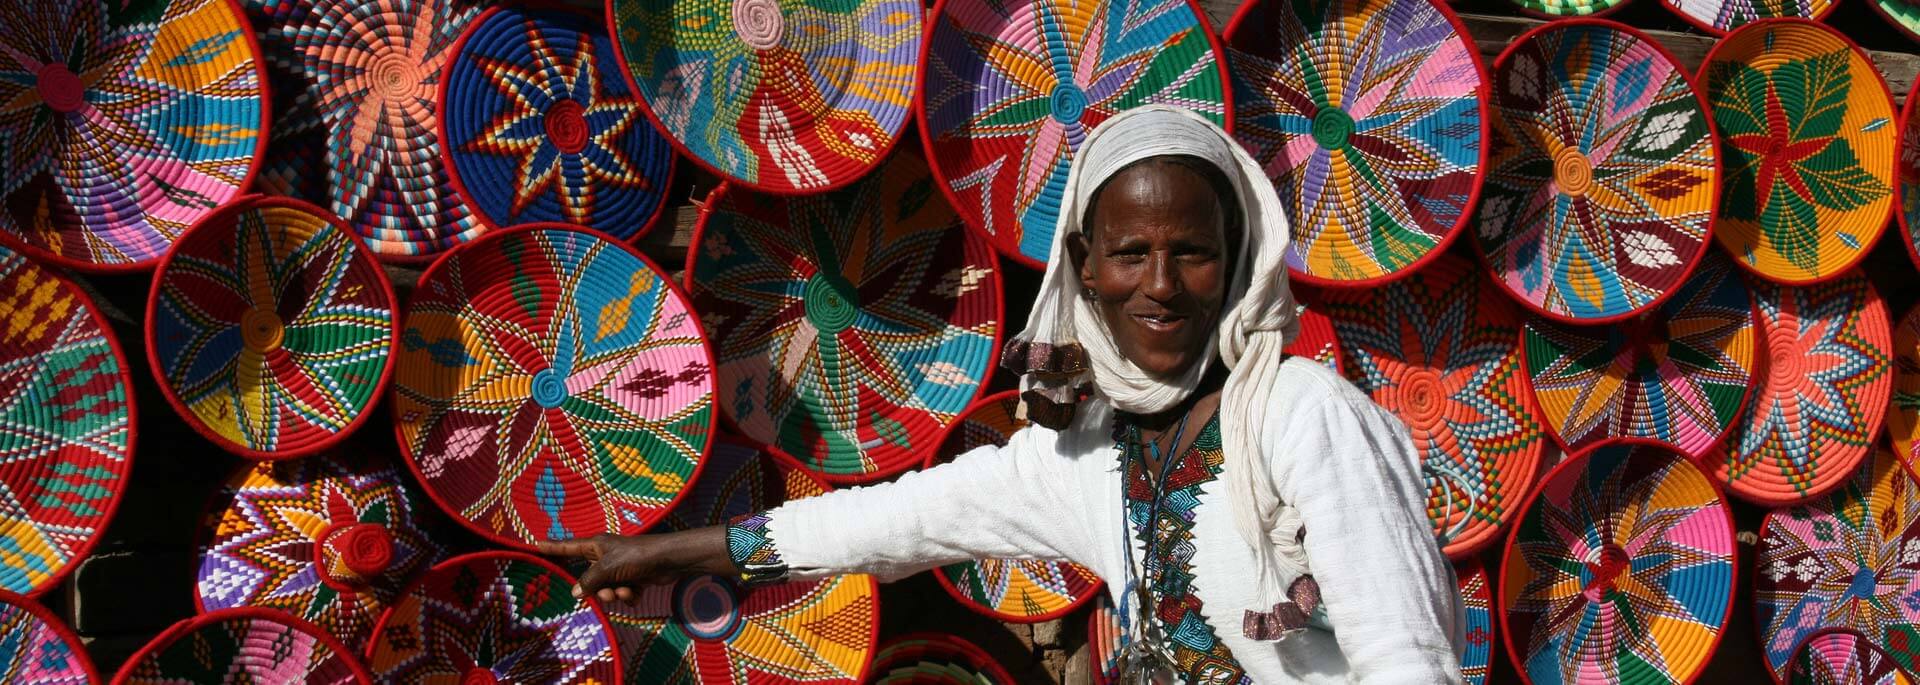 Fotos: Kirchenfest in Aksum (Äthiopien)